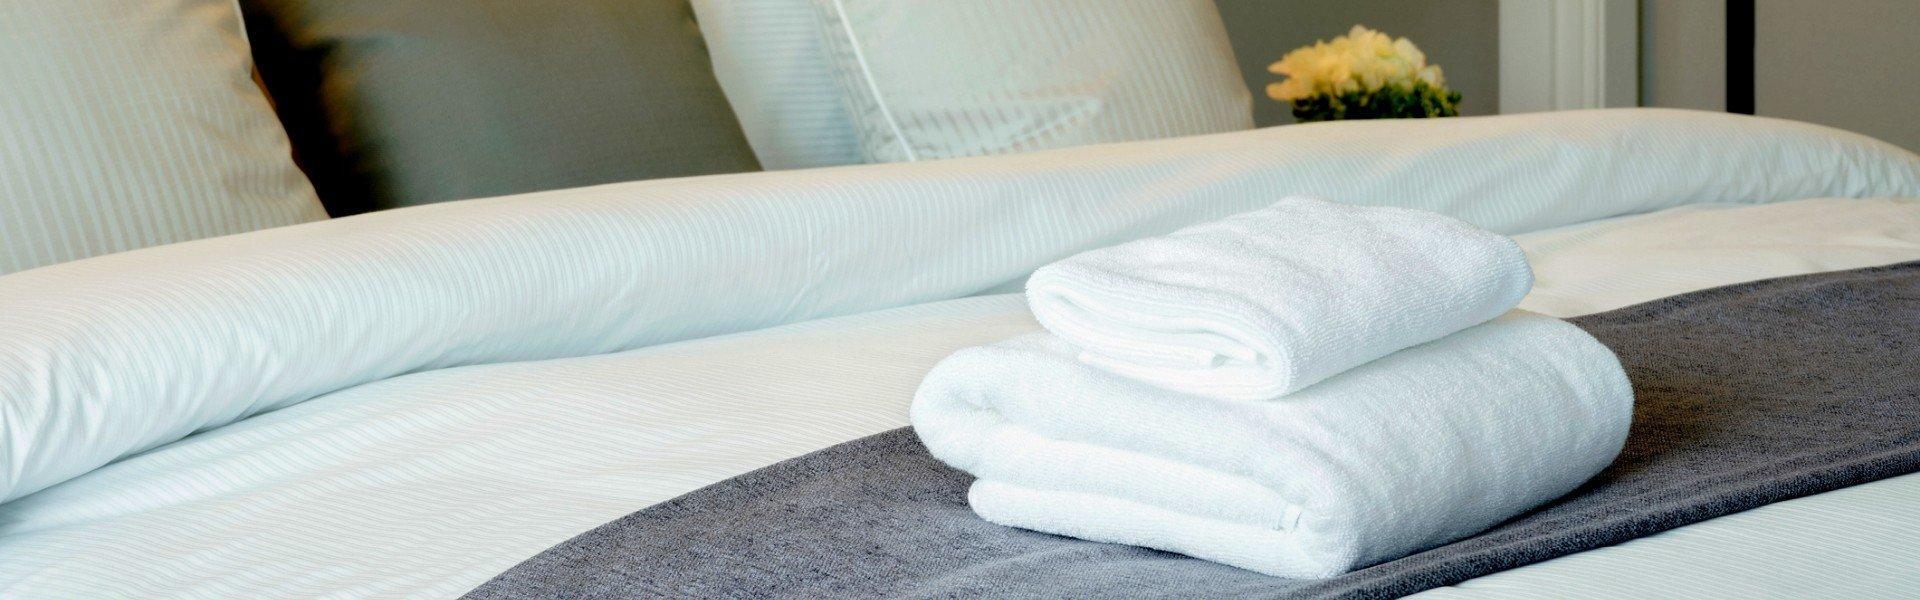 Zestaw ręczników leżący na łóżku